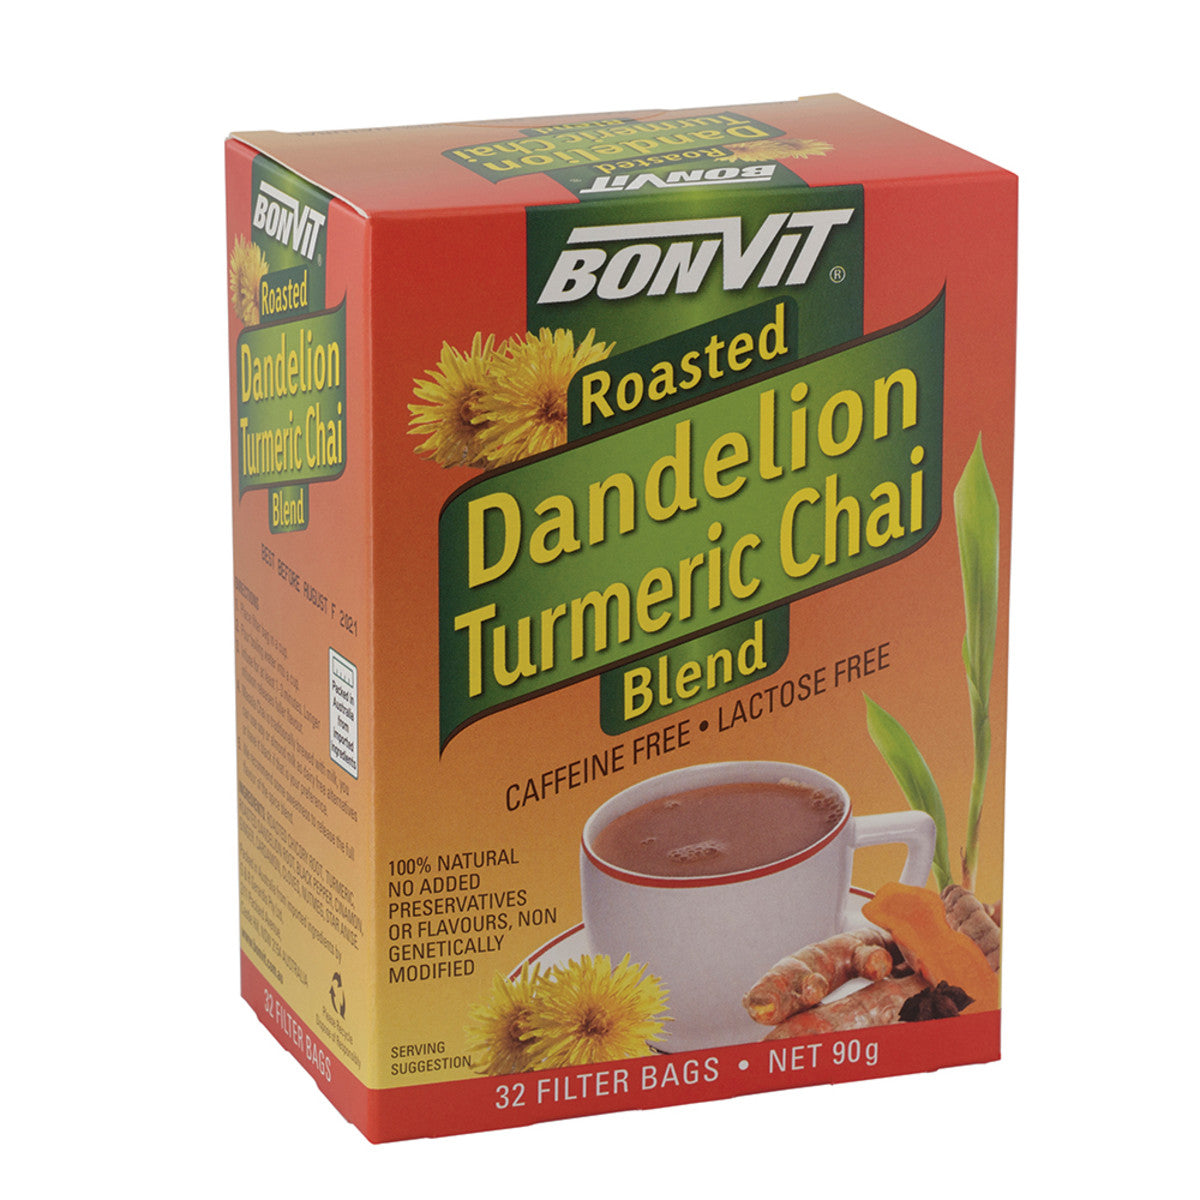 Bonvit - Roasted Dande Turmeric Chai Blend Tea